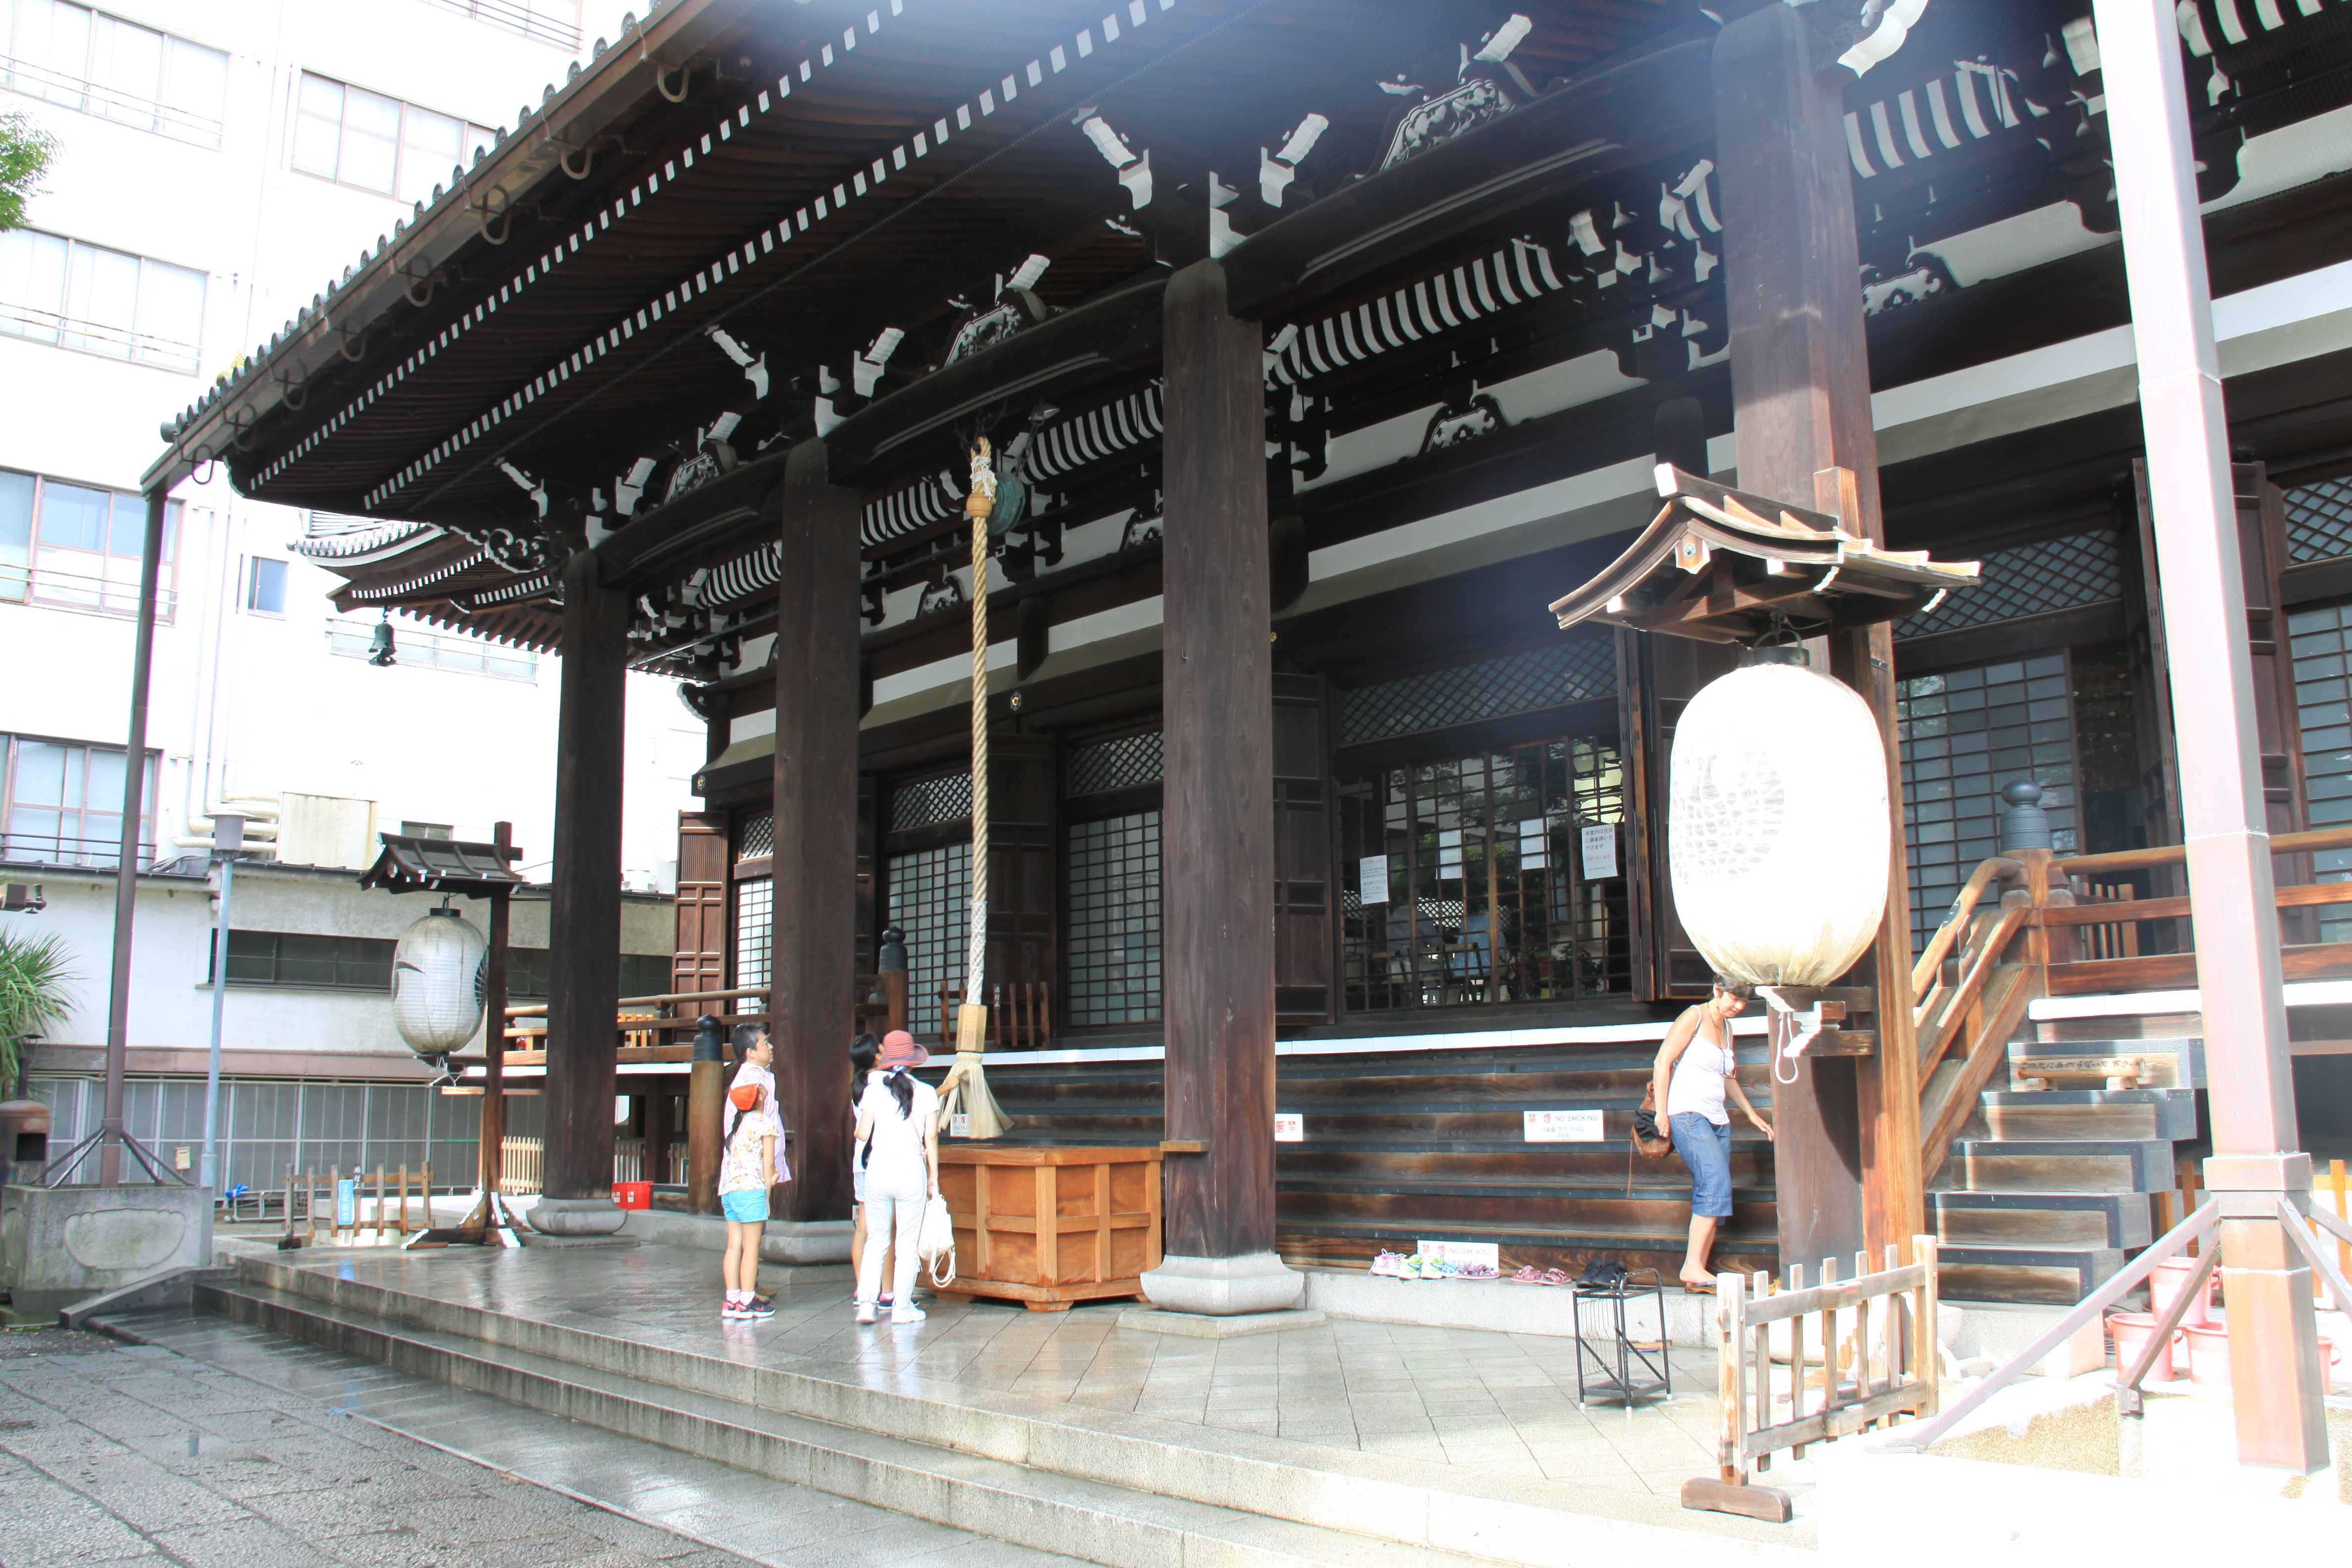 【携程攻略】京都本能寺景点,因为就在京都住的酒店附近,于是就顺路去